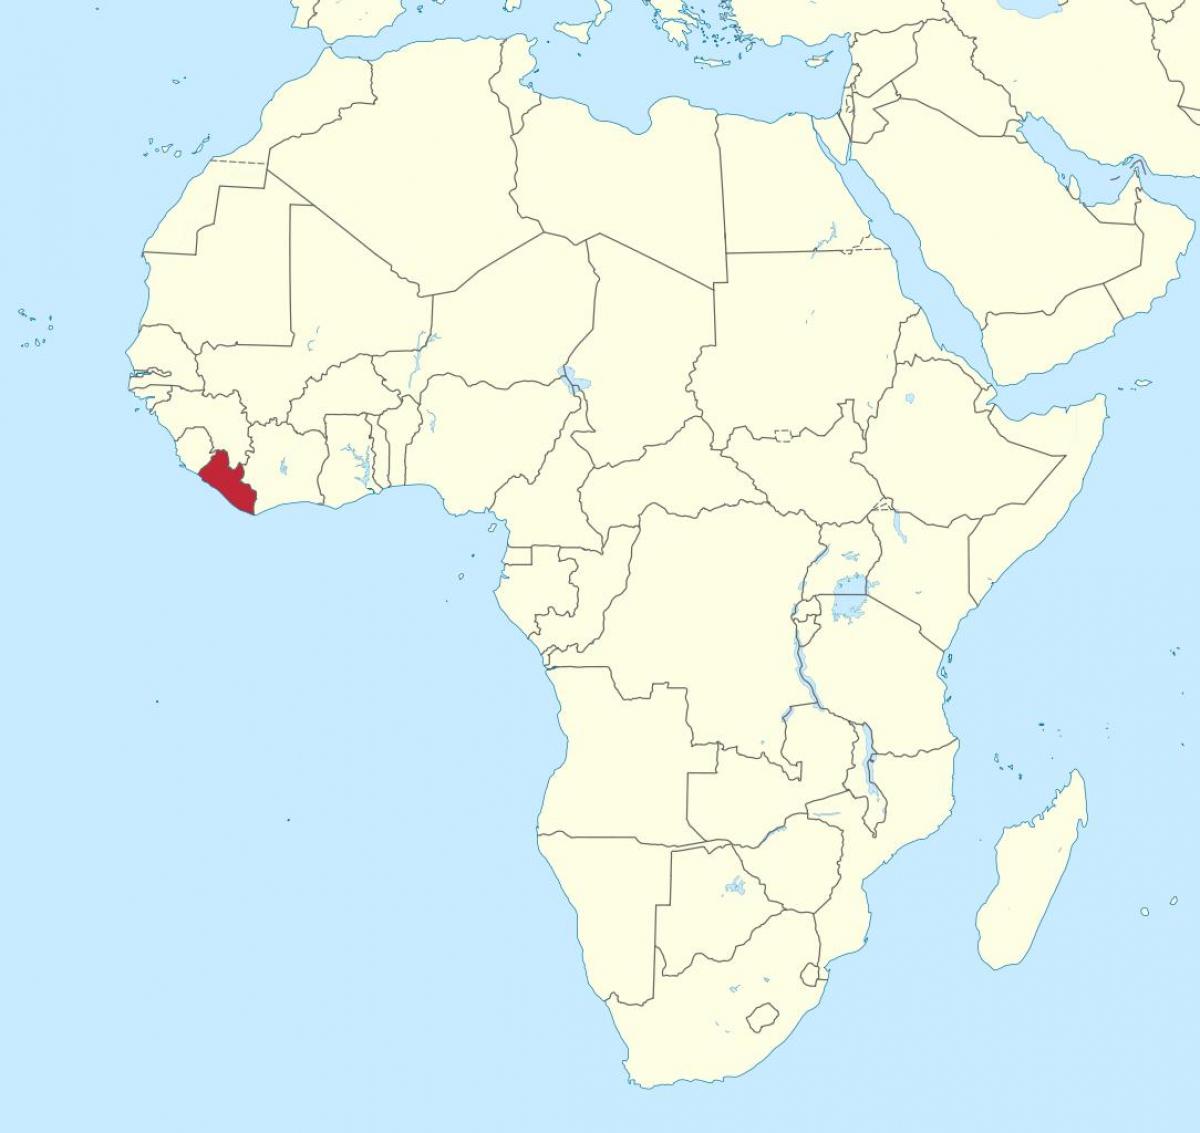 kaart van Liberië-afrika